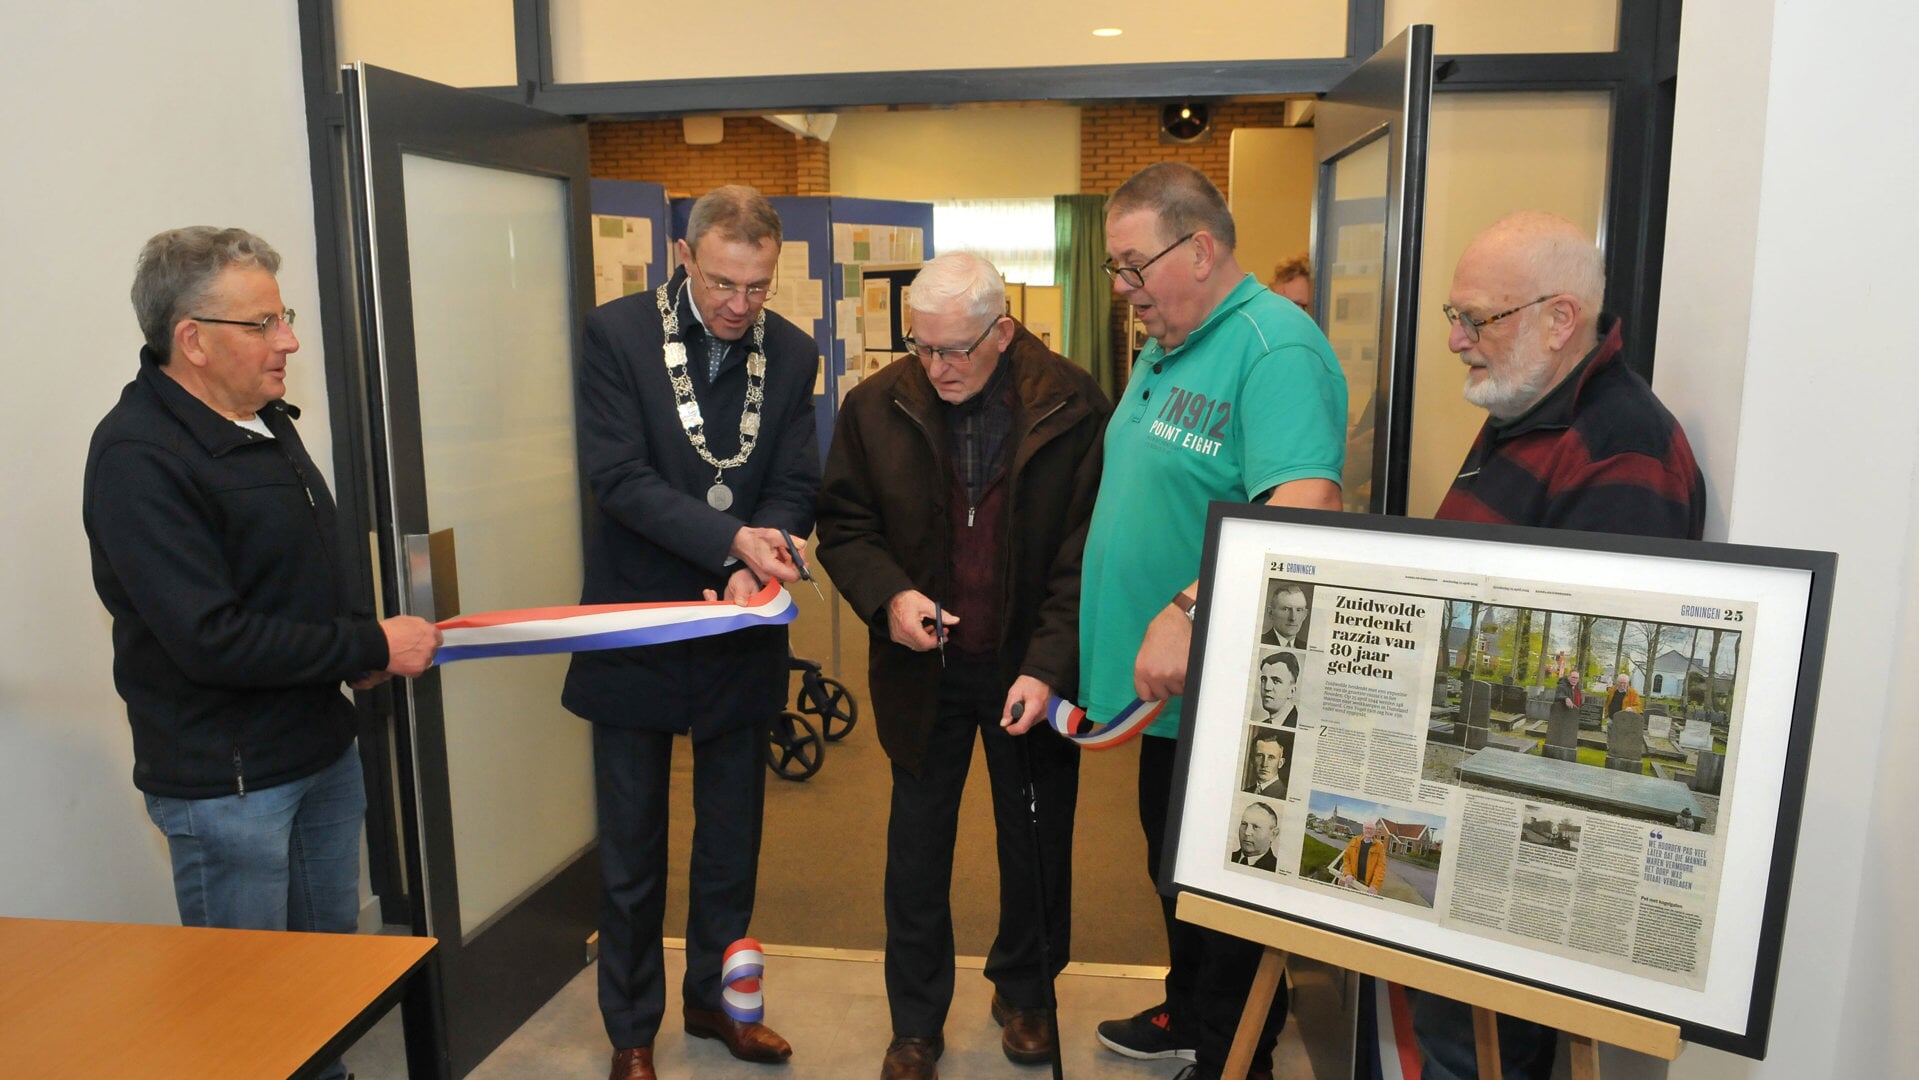 Burgemeester Henk Jan Bolding opent de tentoonstelling in Zuidwolde.